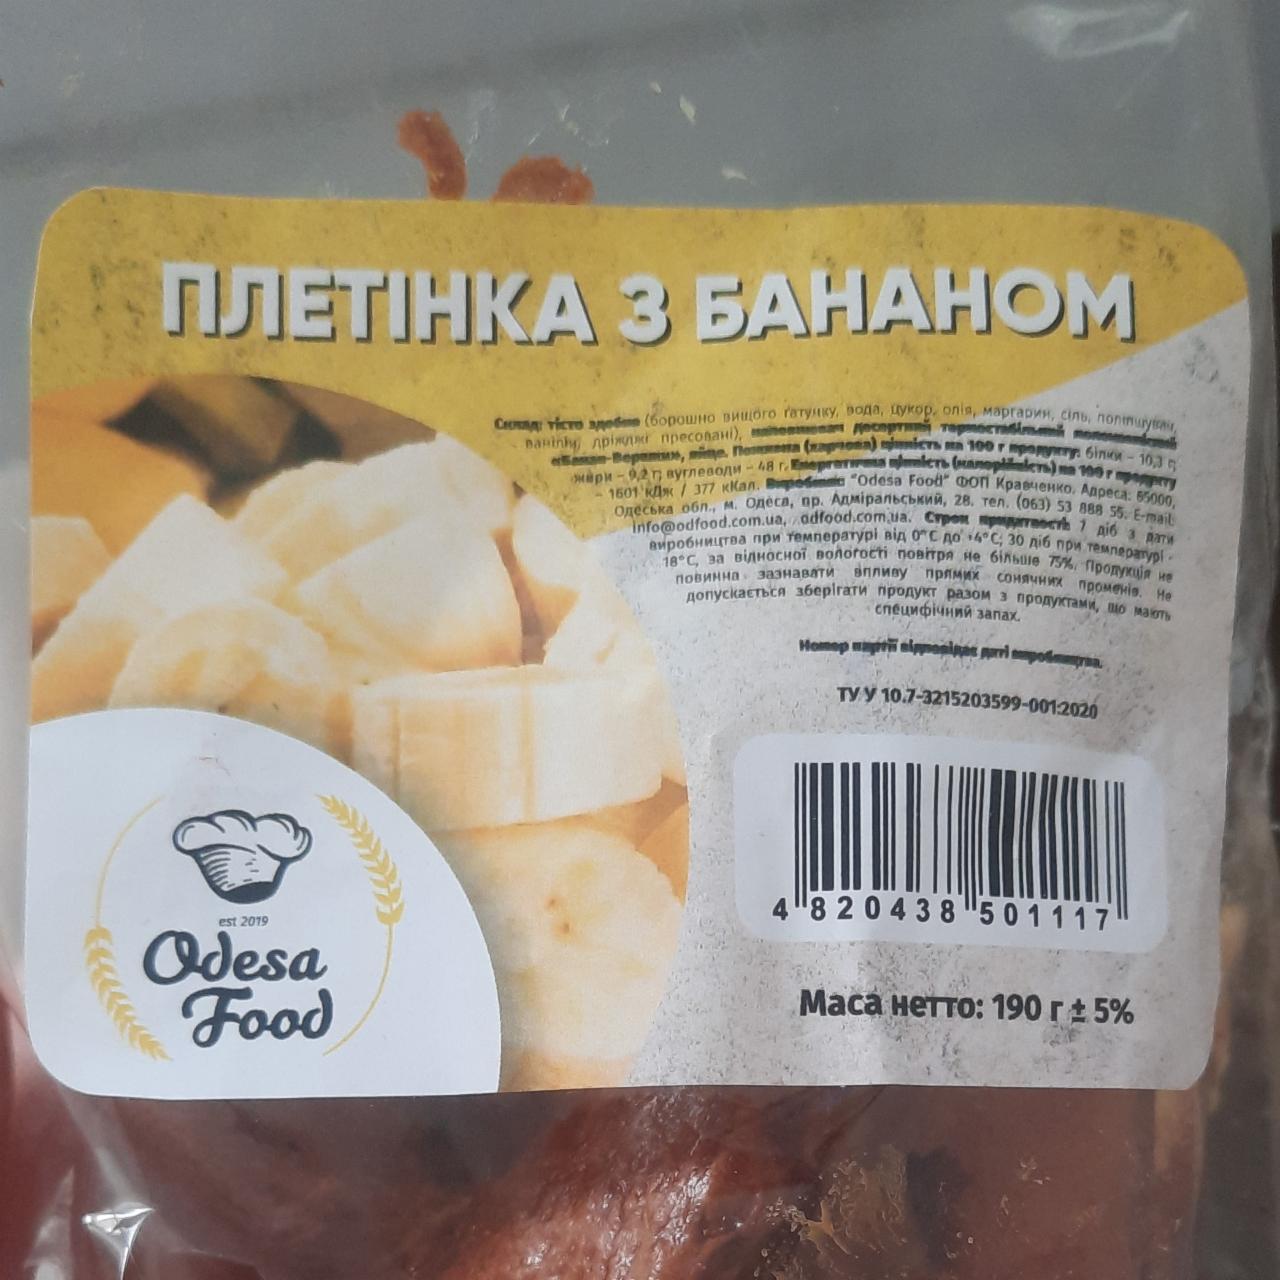 Фото - Плетенка с бананом Odesa Food